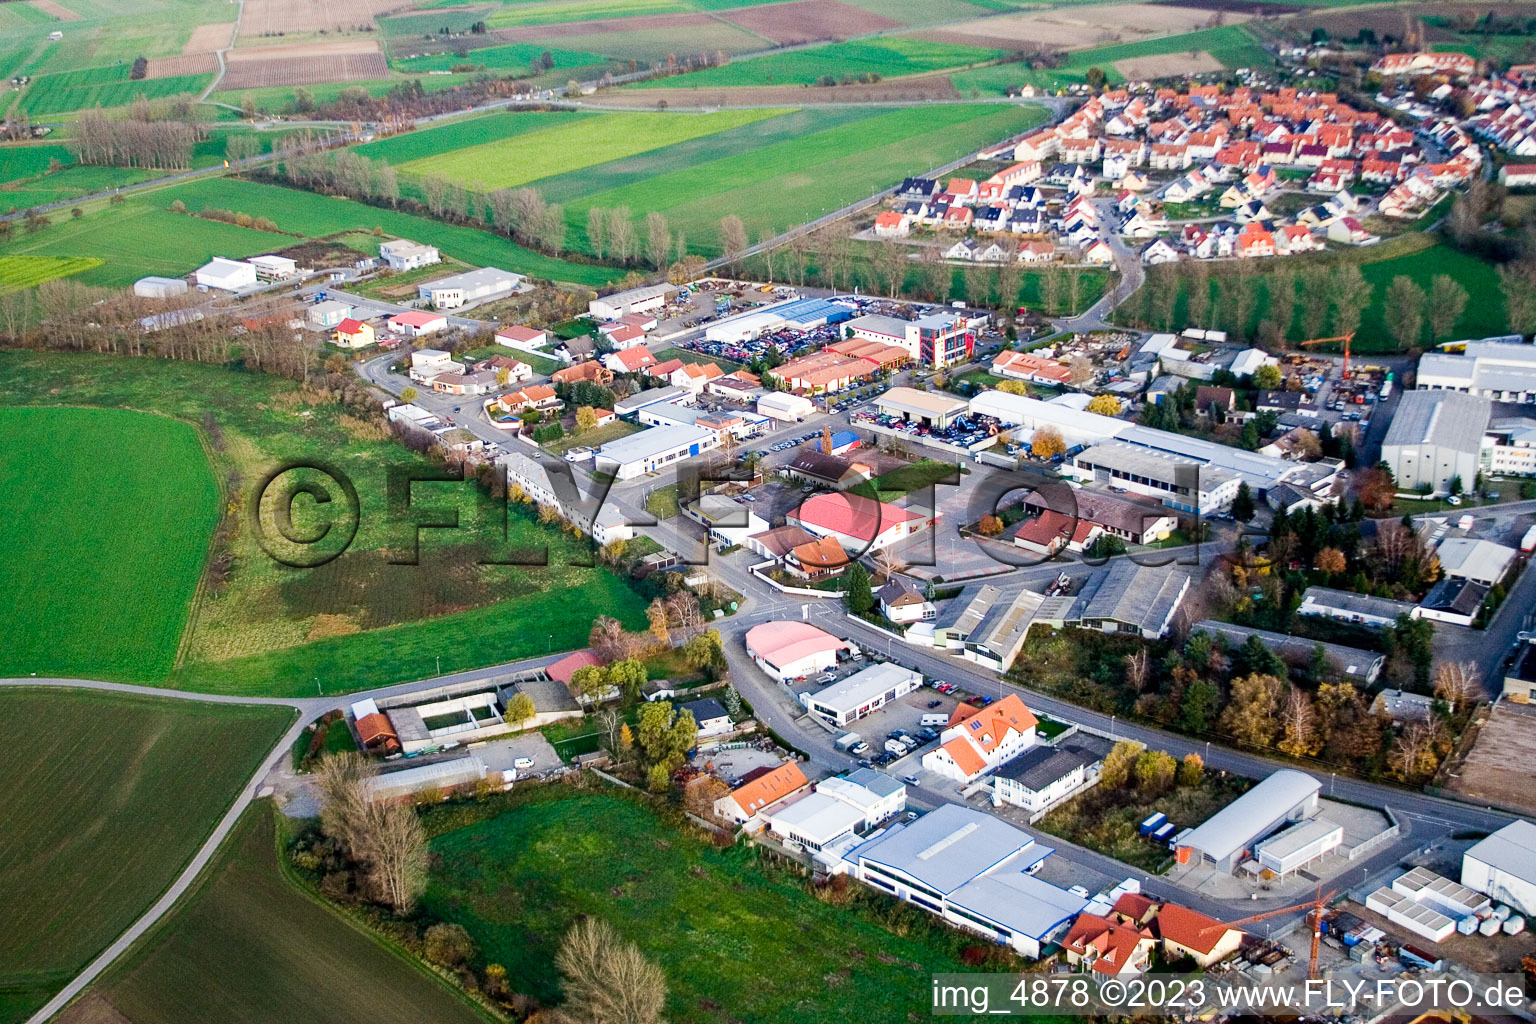 Vue aérienne de Du sud-ouest à Hockenheim dans le département Bade-Wurtemberg, Allemagne